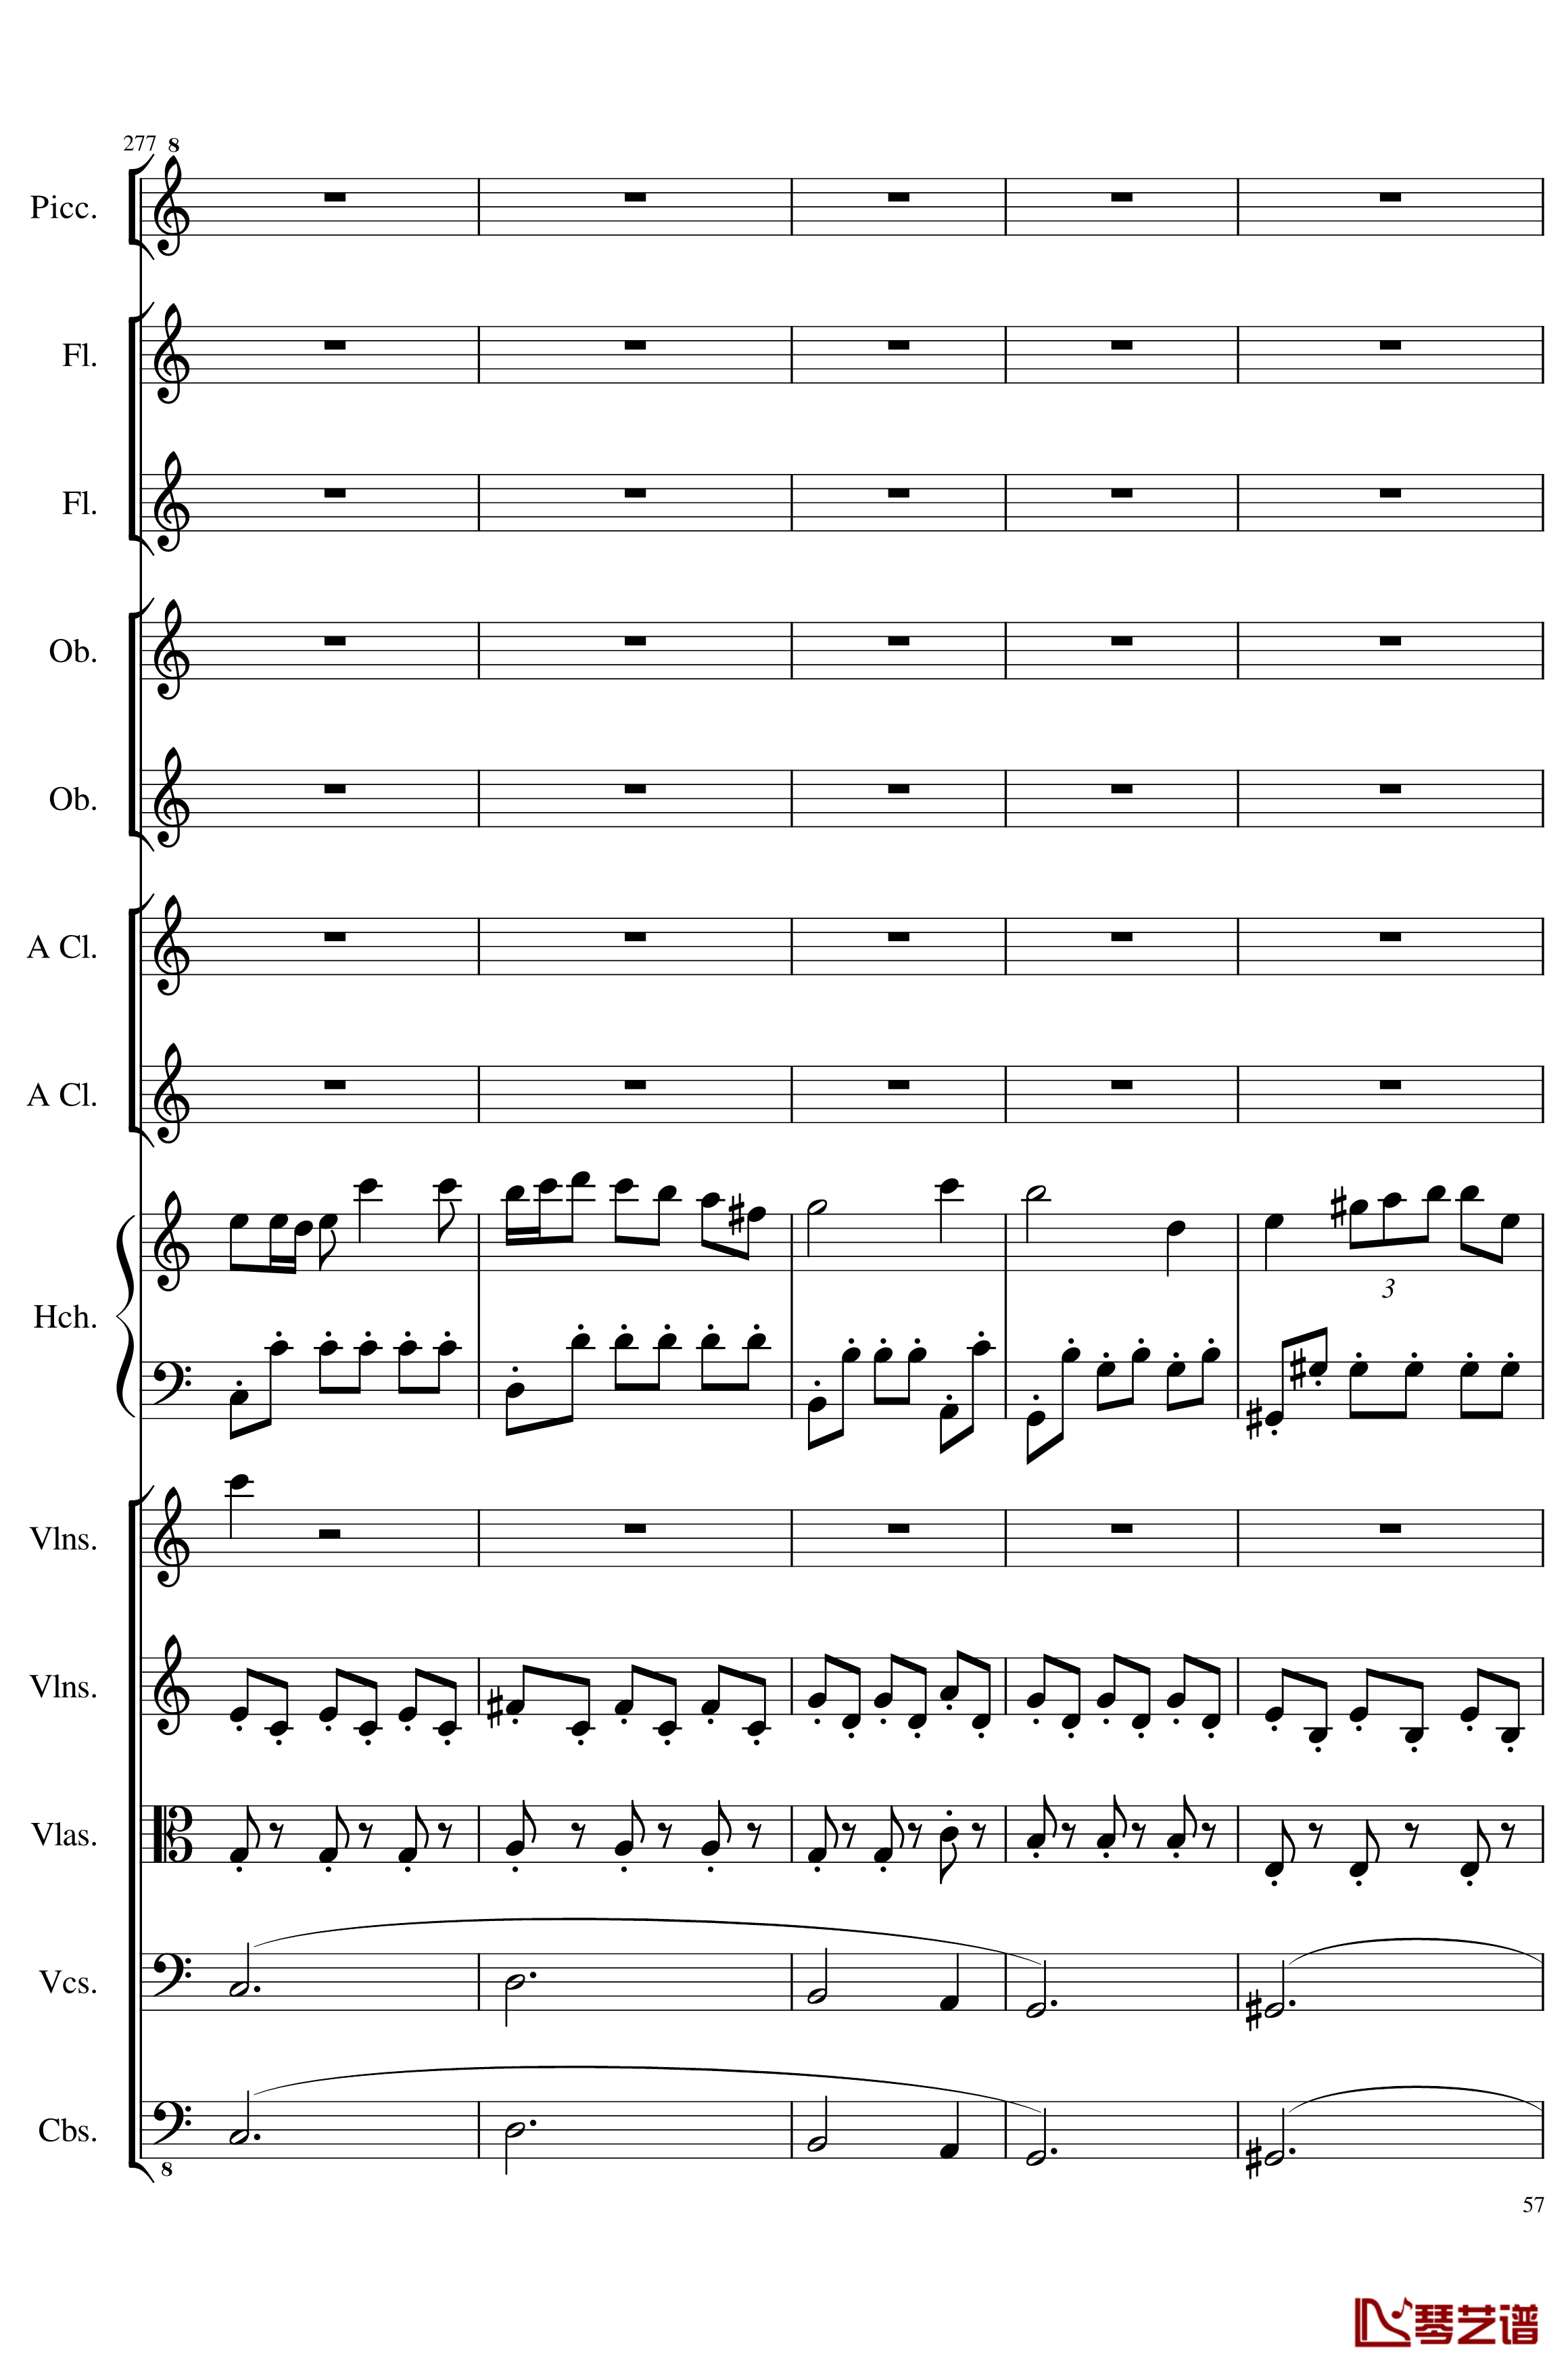 7 Contredanses No.1-7, Op.124钢琴谱-7首乡村舞曲，第一至第七，作品124-一个球57